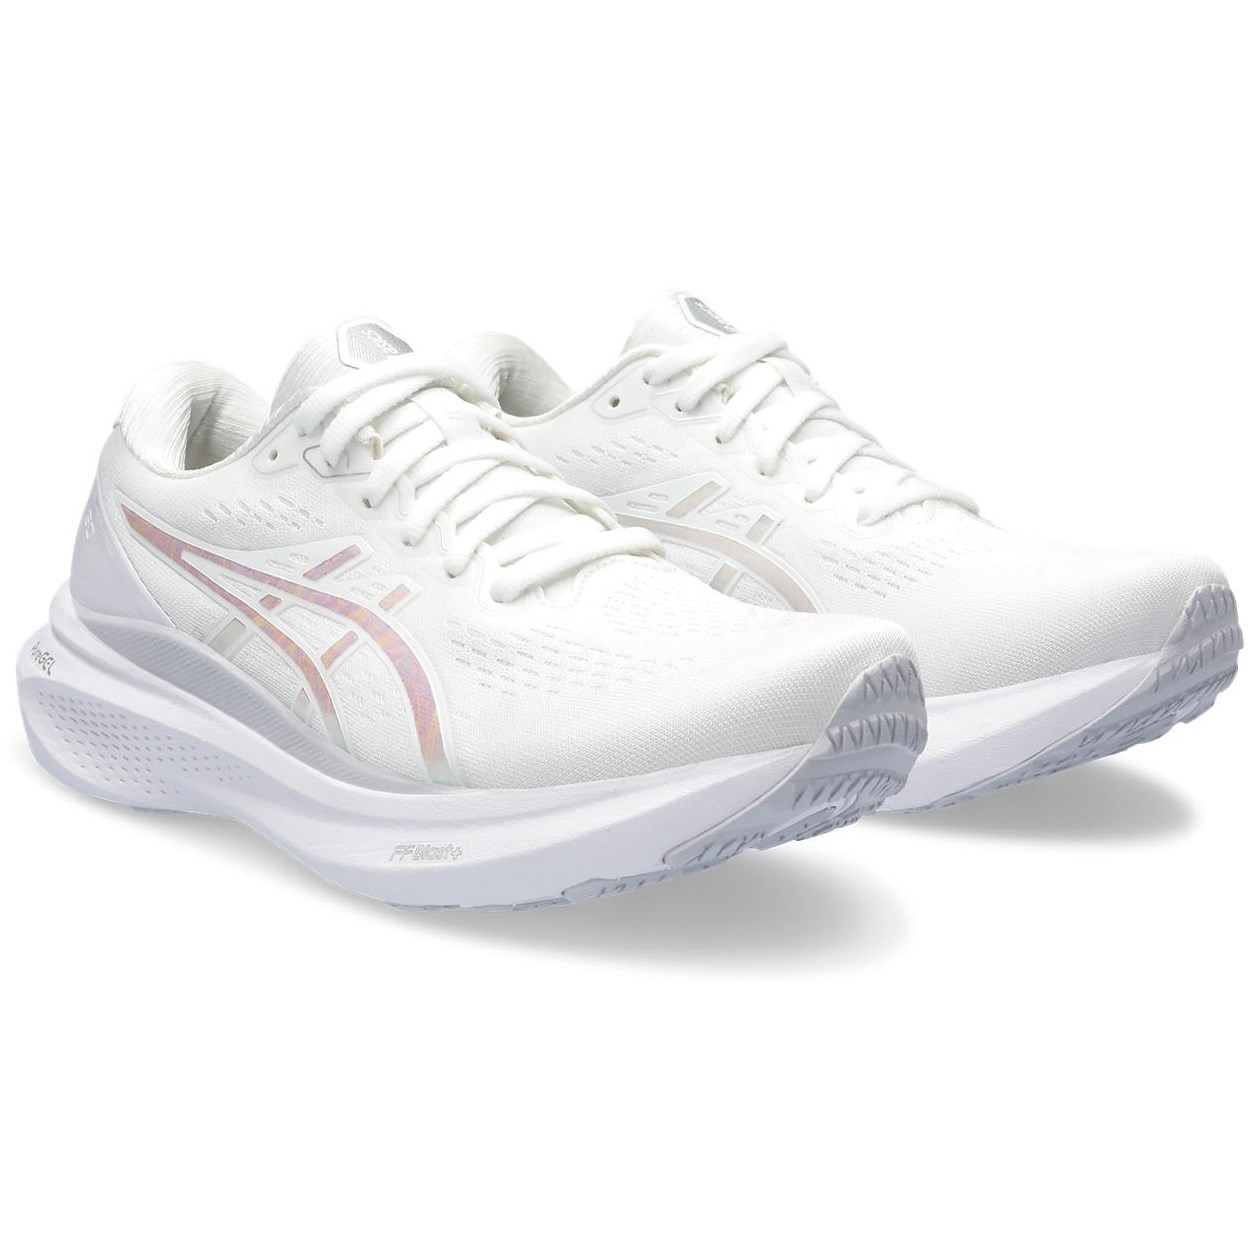 Asics Gel Kayano 30 Anniversary - Womens Running Shoes - White/Lilac ...